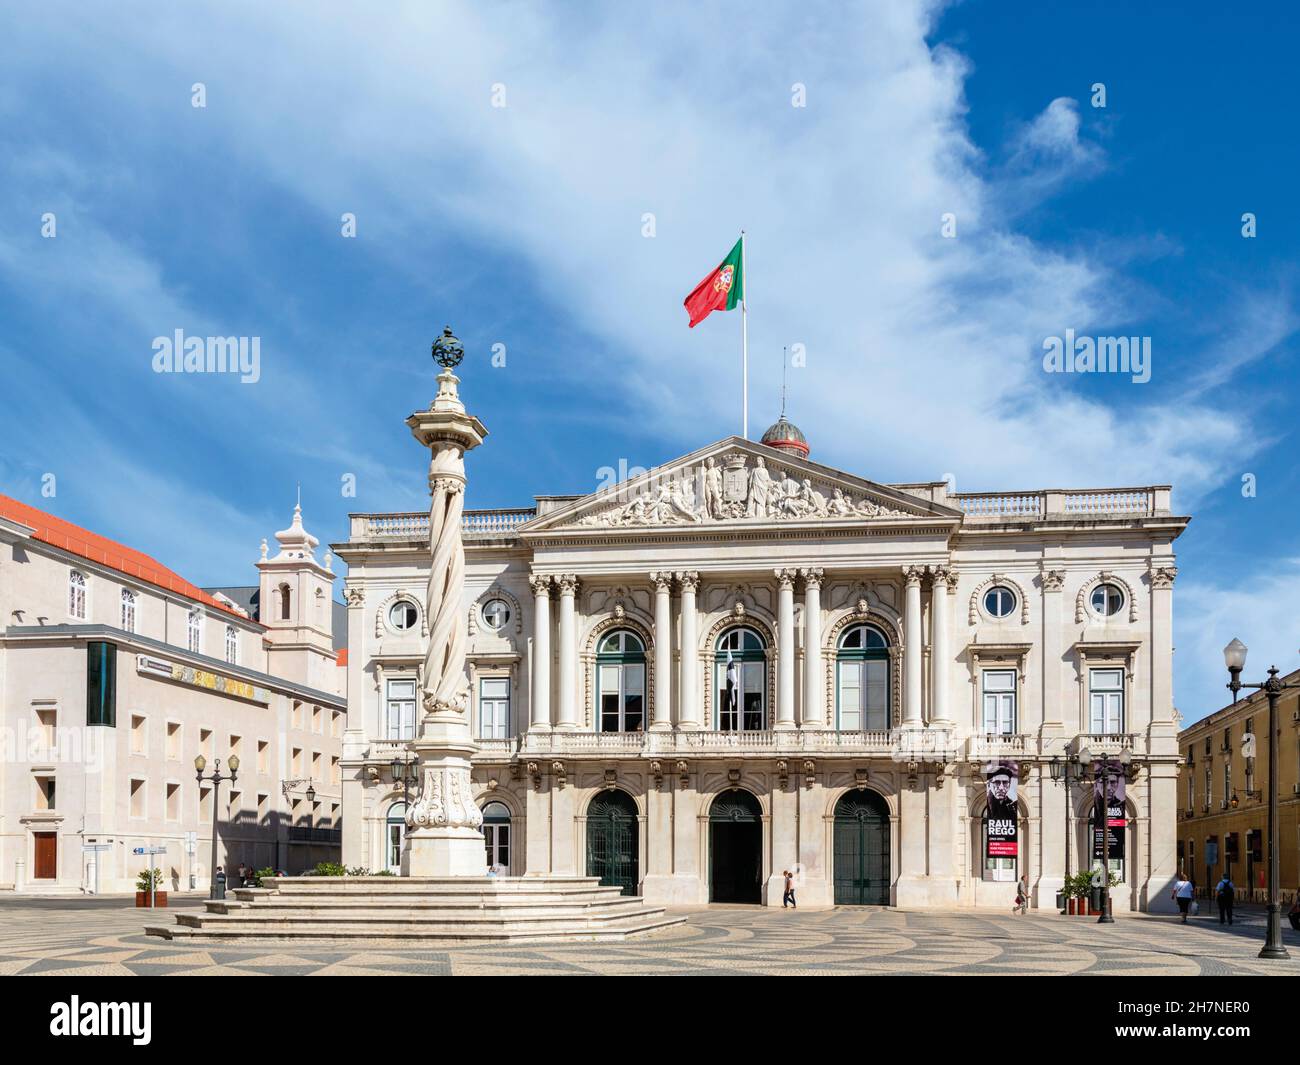 Lissabon, Portugal. Paços do Concelho de Lisboa oder das Rathaus von Lissabon im Praça do Município oder auf dem Marktplatz. Das neoklassizistische Gebäude des Architekten Stockfoto